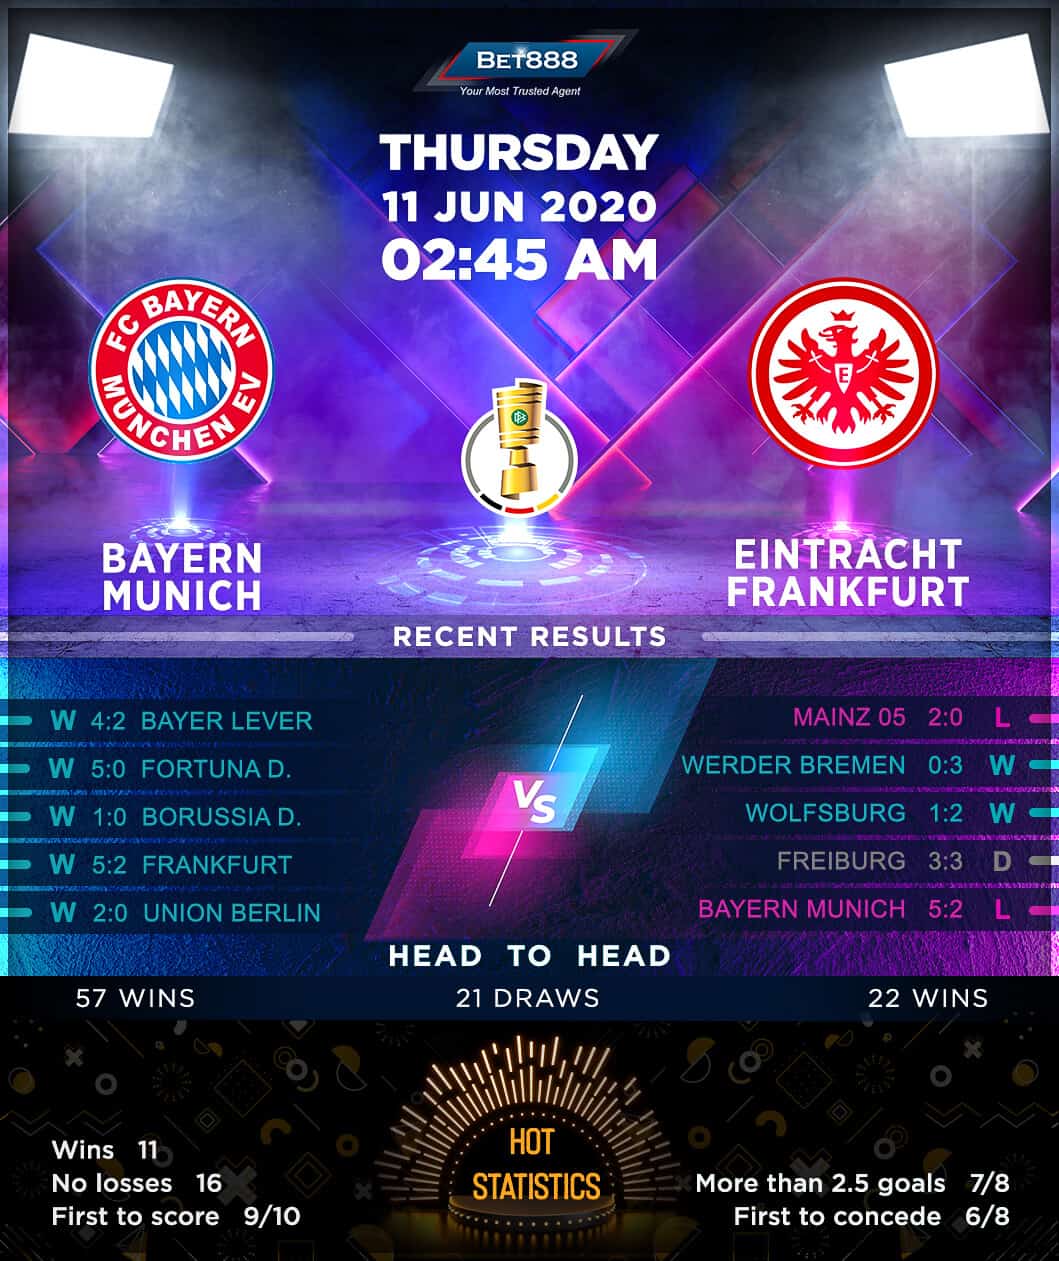 Bayern Munich vs Eintracht Frankfurt 11/06/20